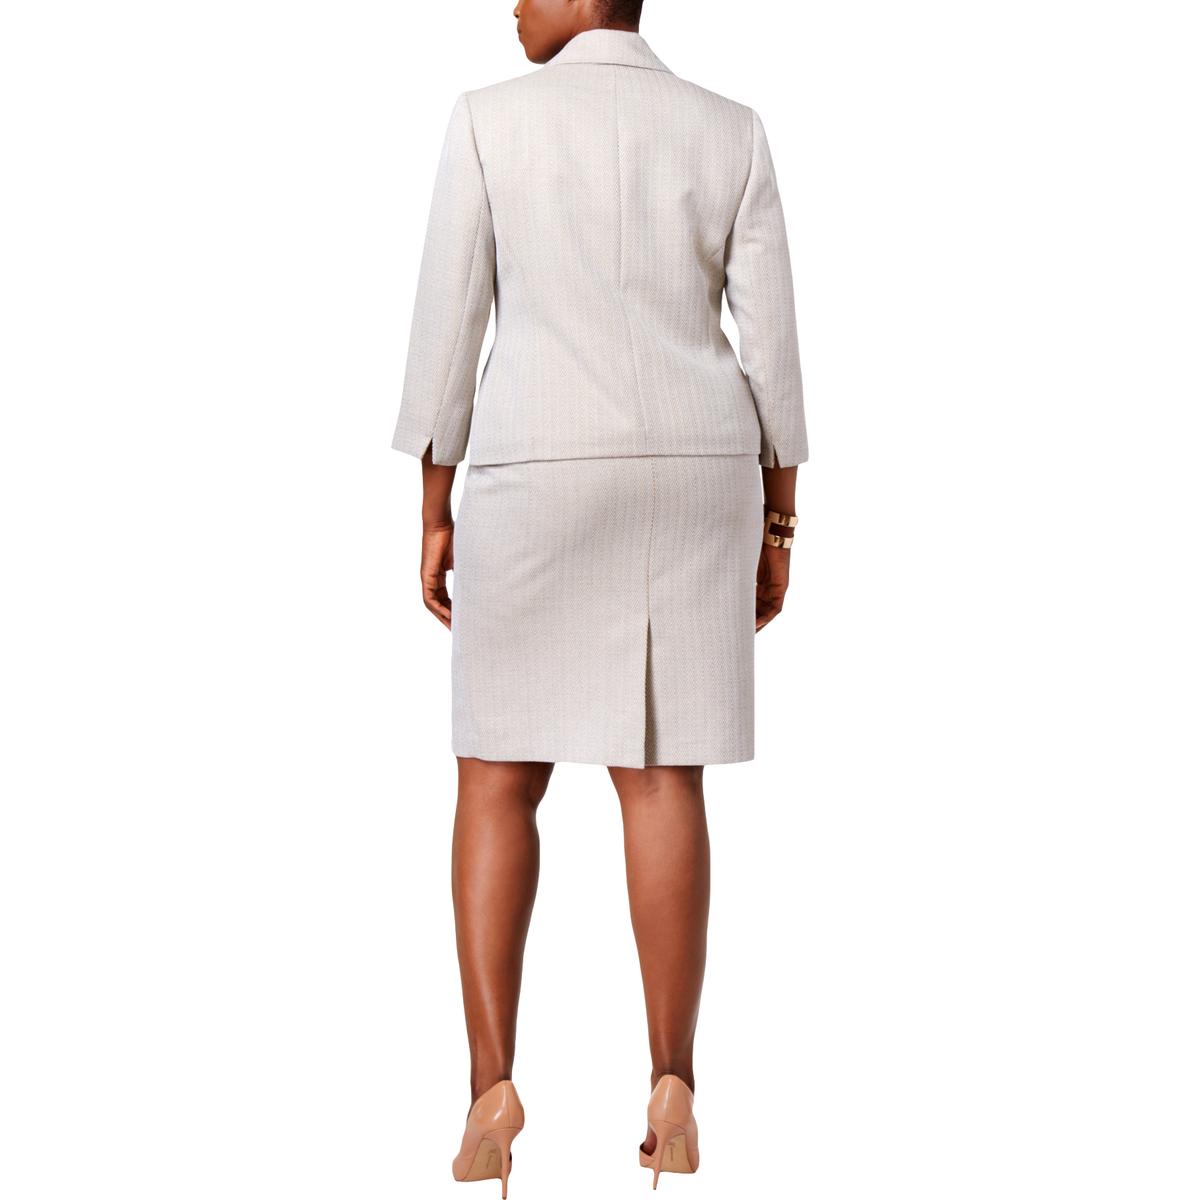 Le Suit Womens Beige Herringbone Office Wear Skirt Suit Plus 16W BHFO ...